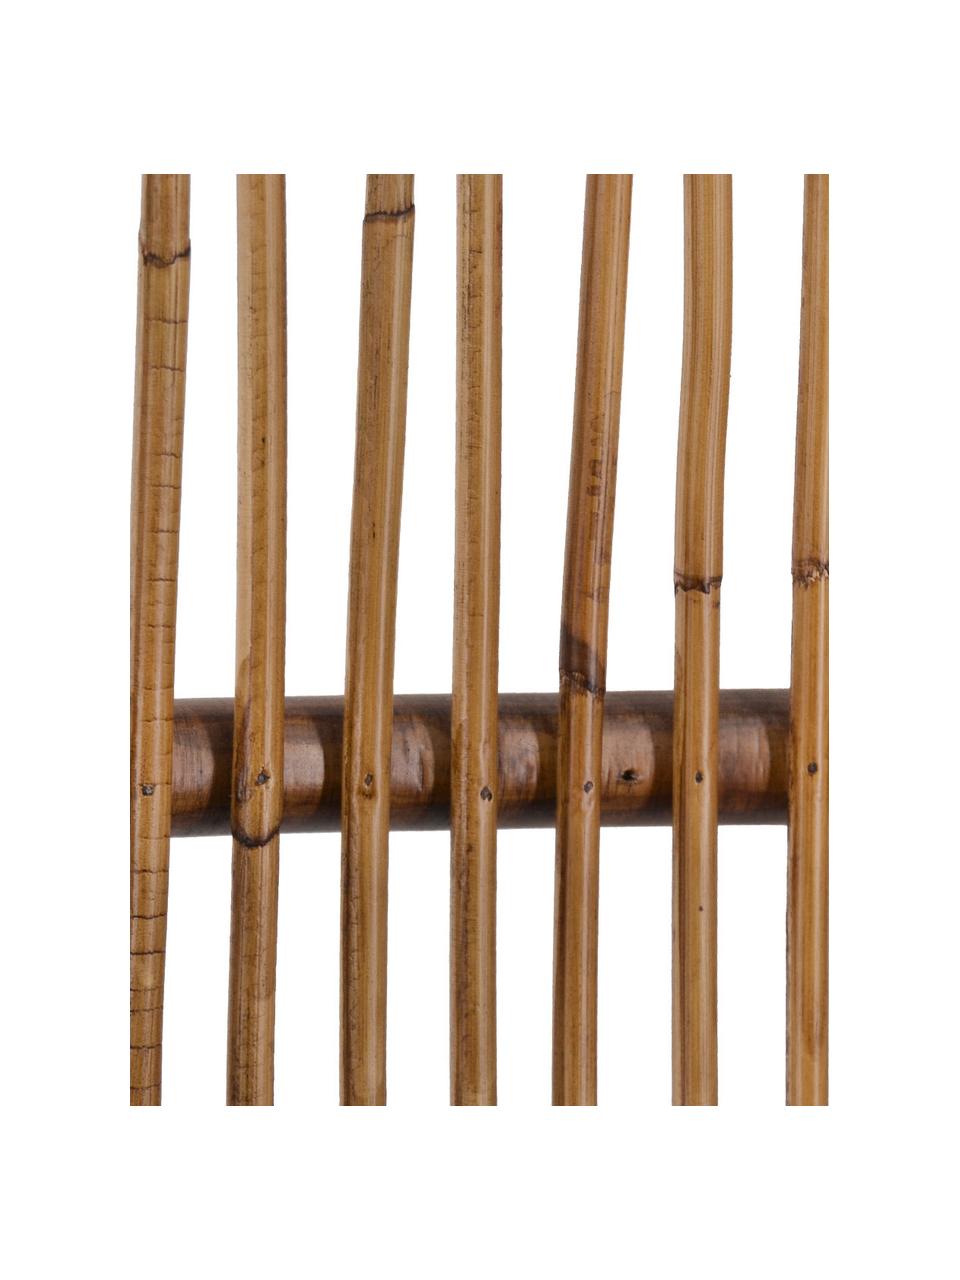 Kreslo z dreva a bambusu Bambu, Hnedá